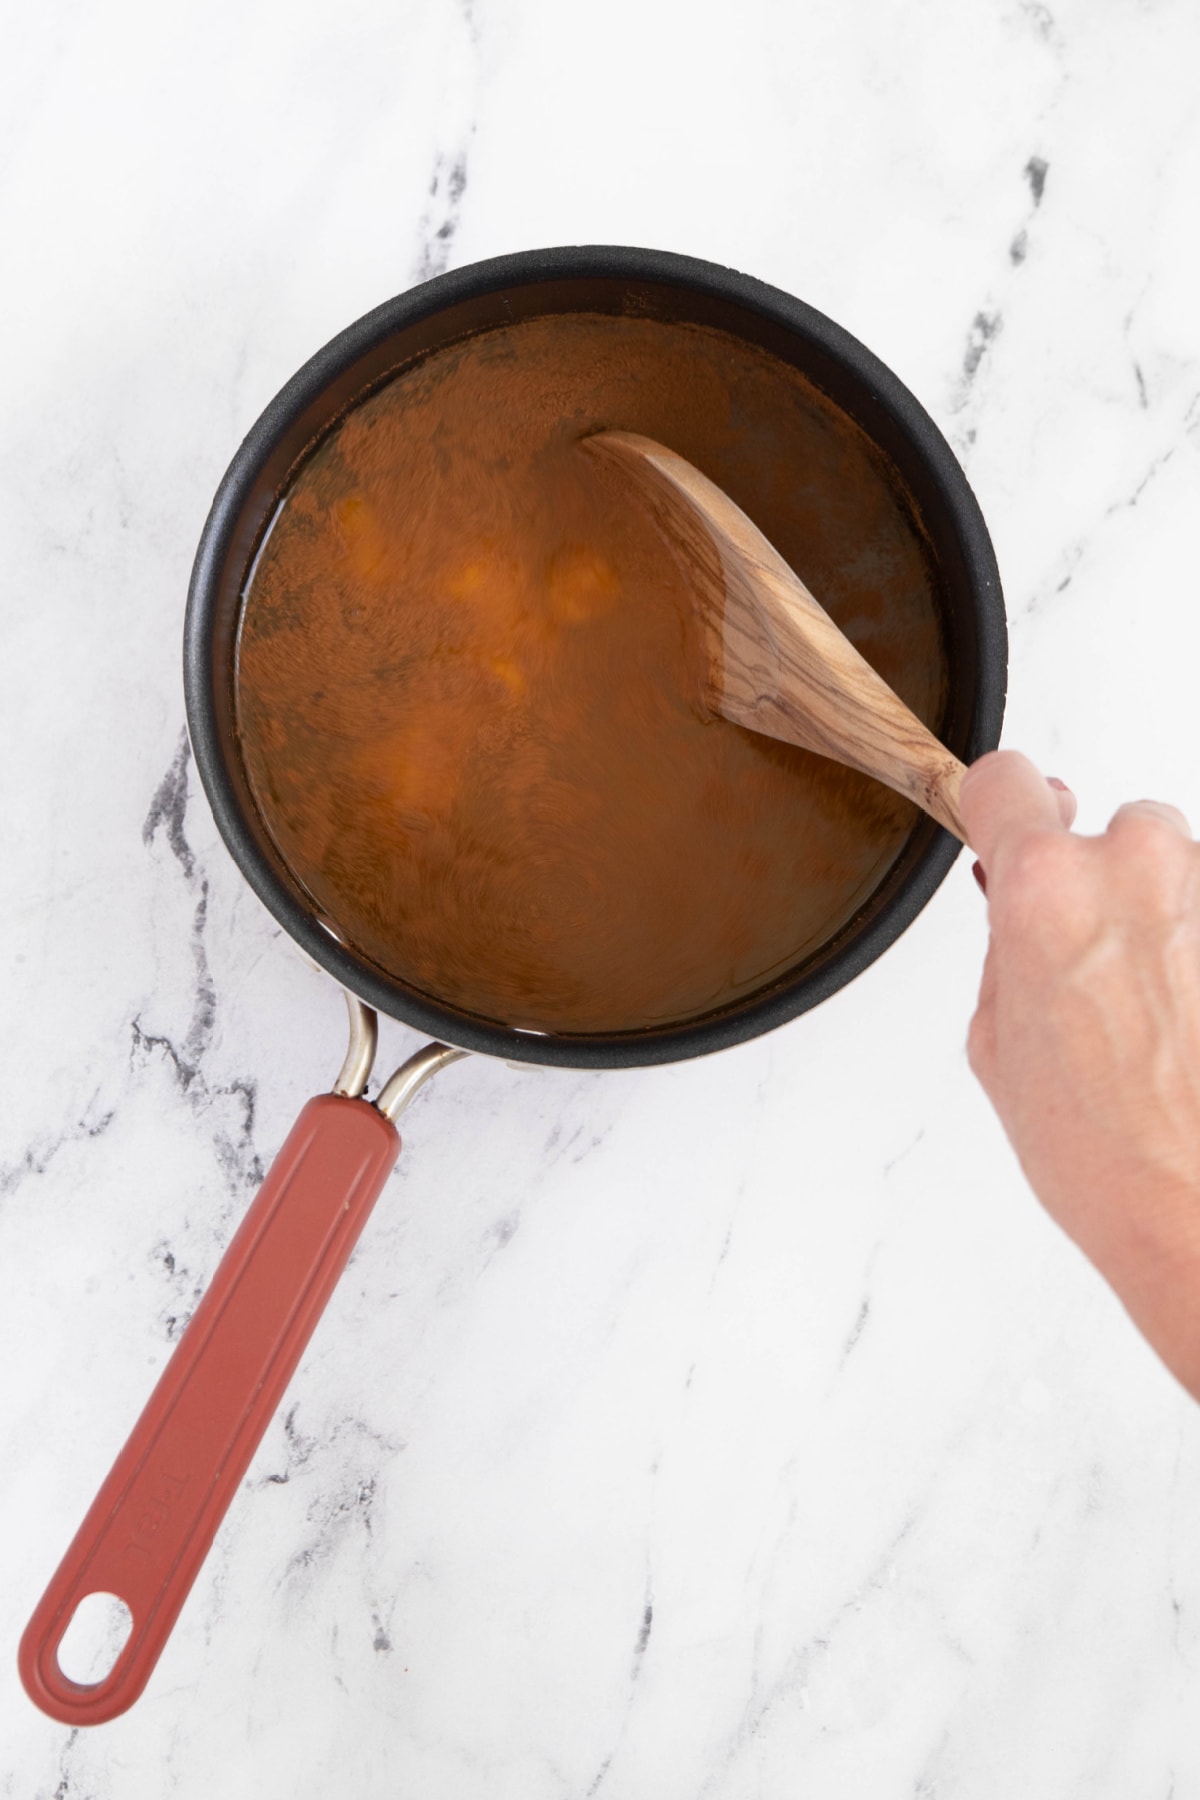 Stirring ingredients for pumpkin juice in saucepan